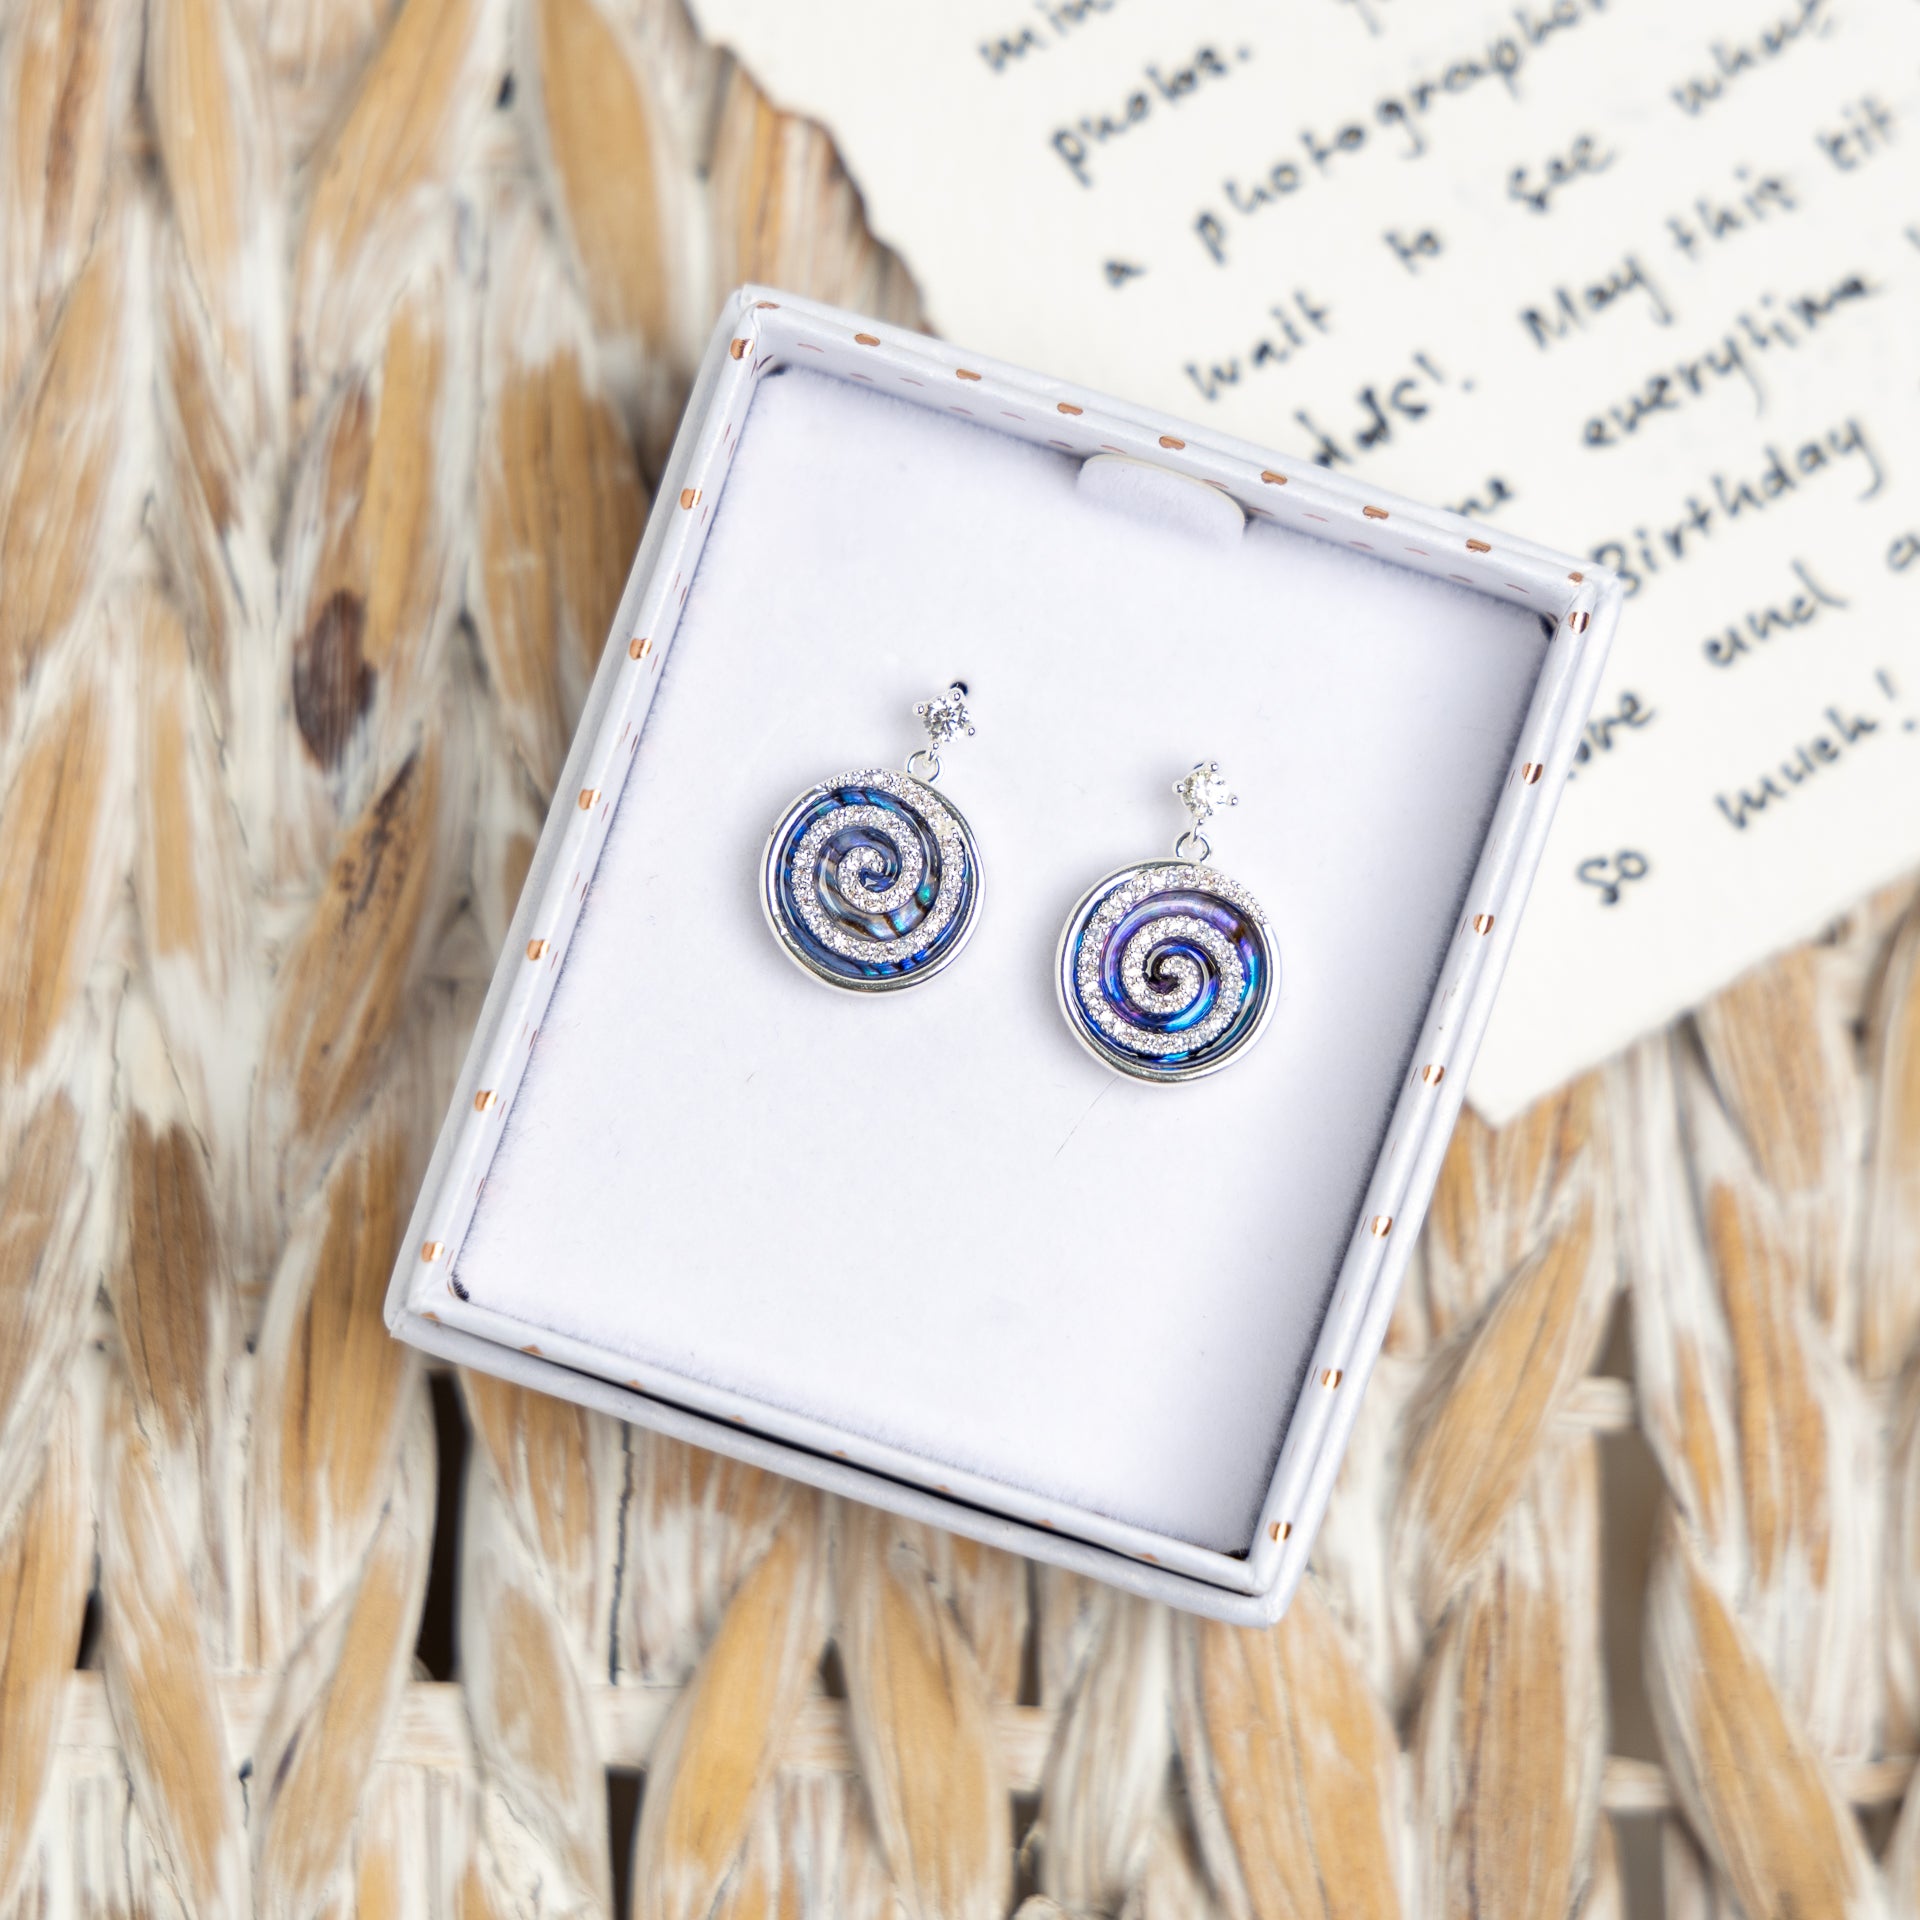 Pāua Shell Swirl Earrings